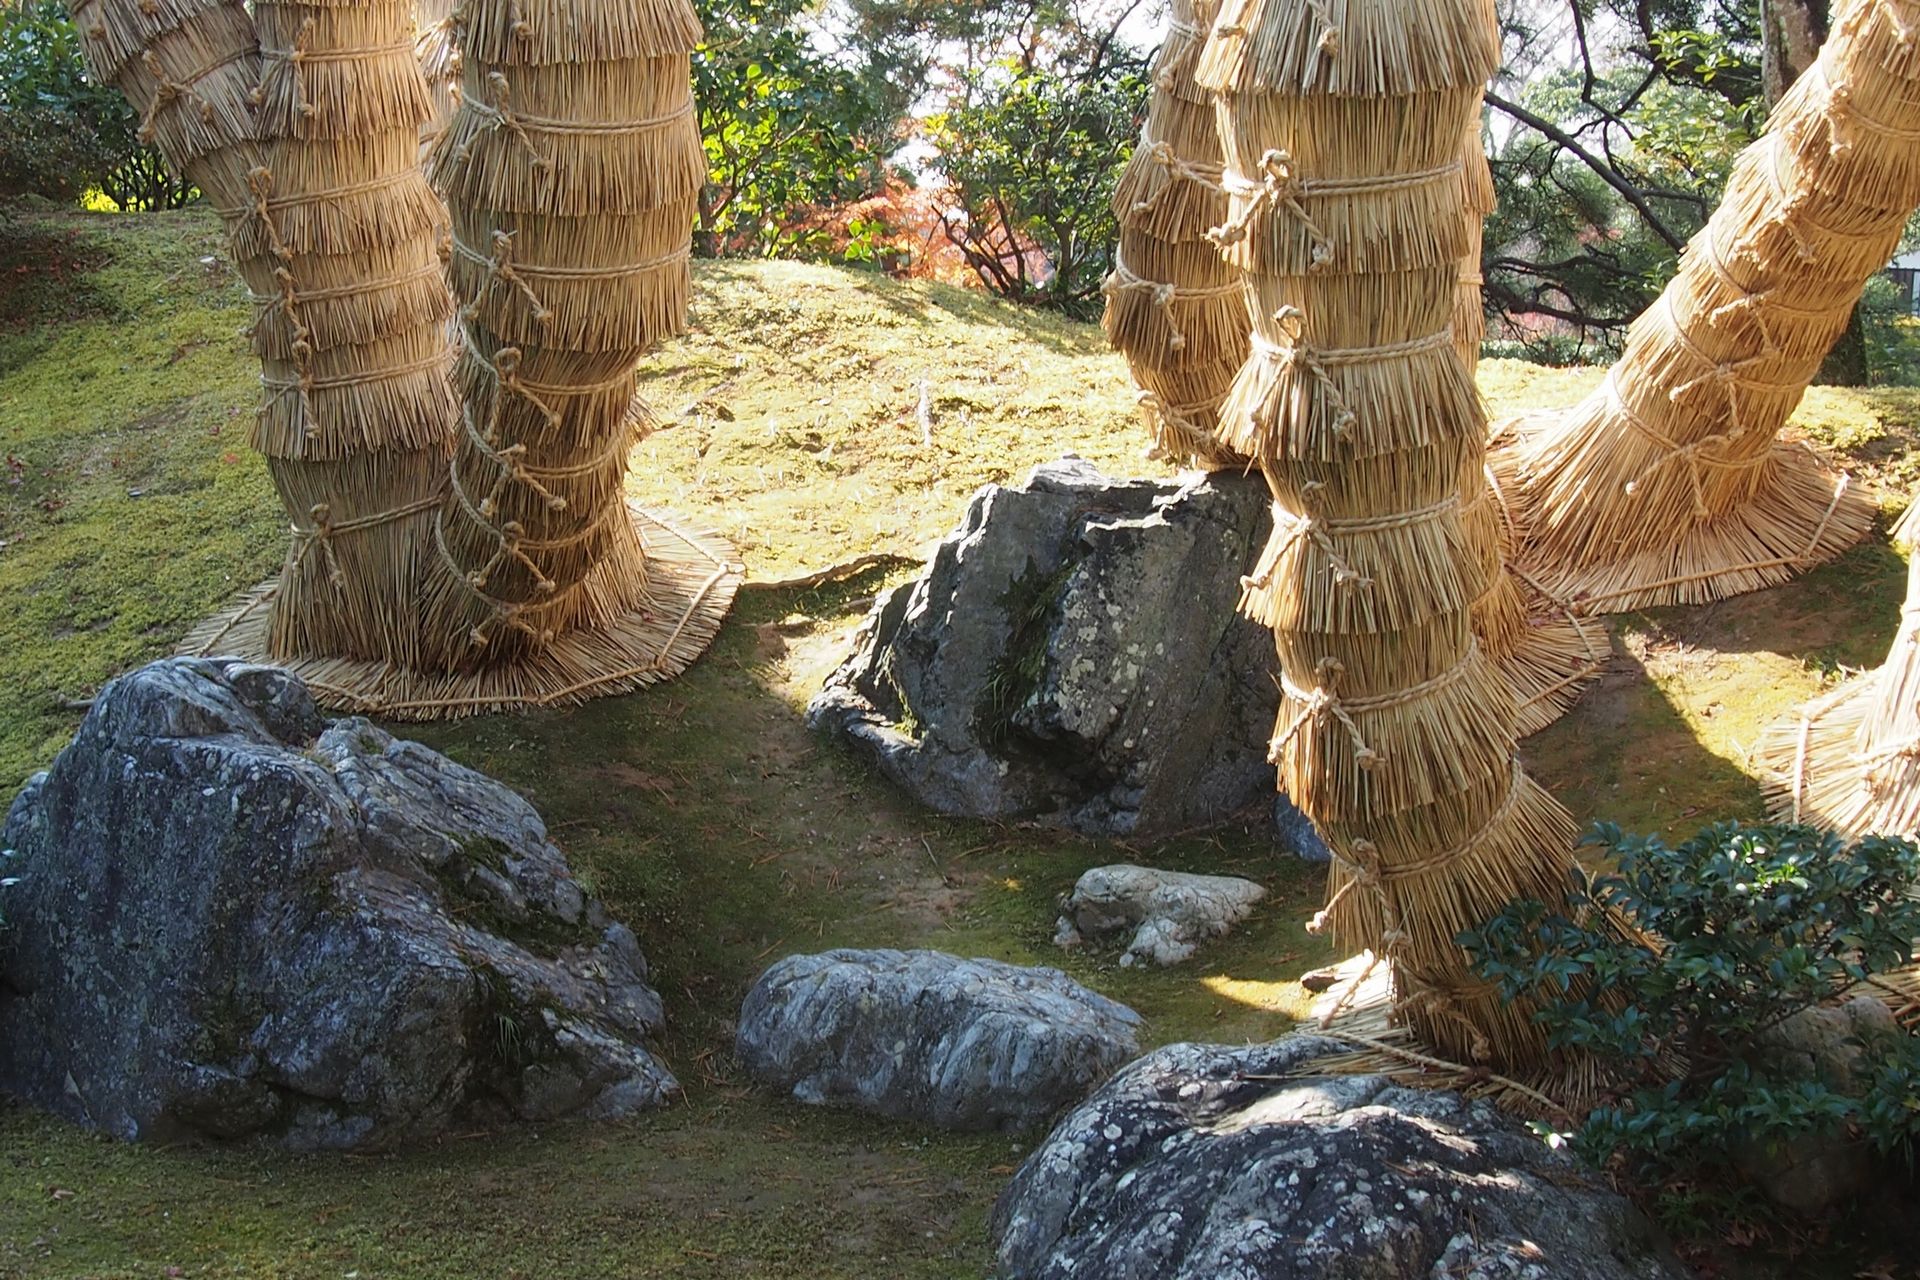 The winter-dressed Cycad at katsurarikyurikyu